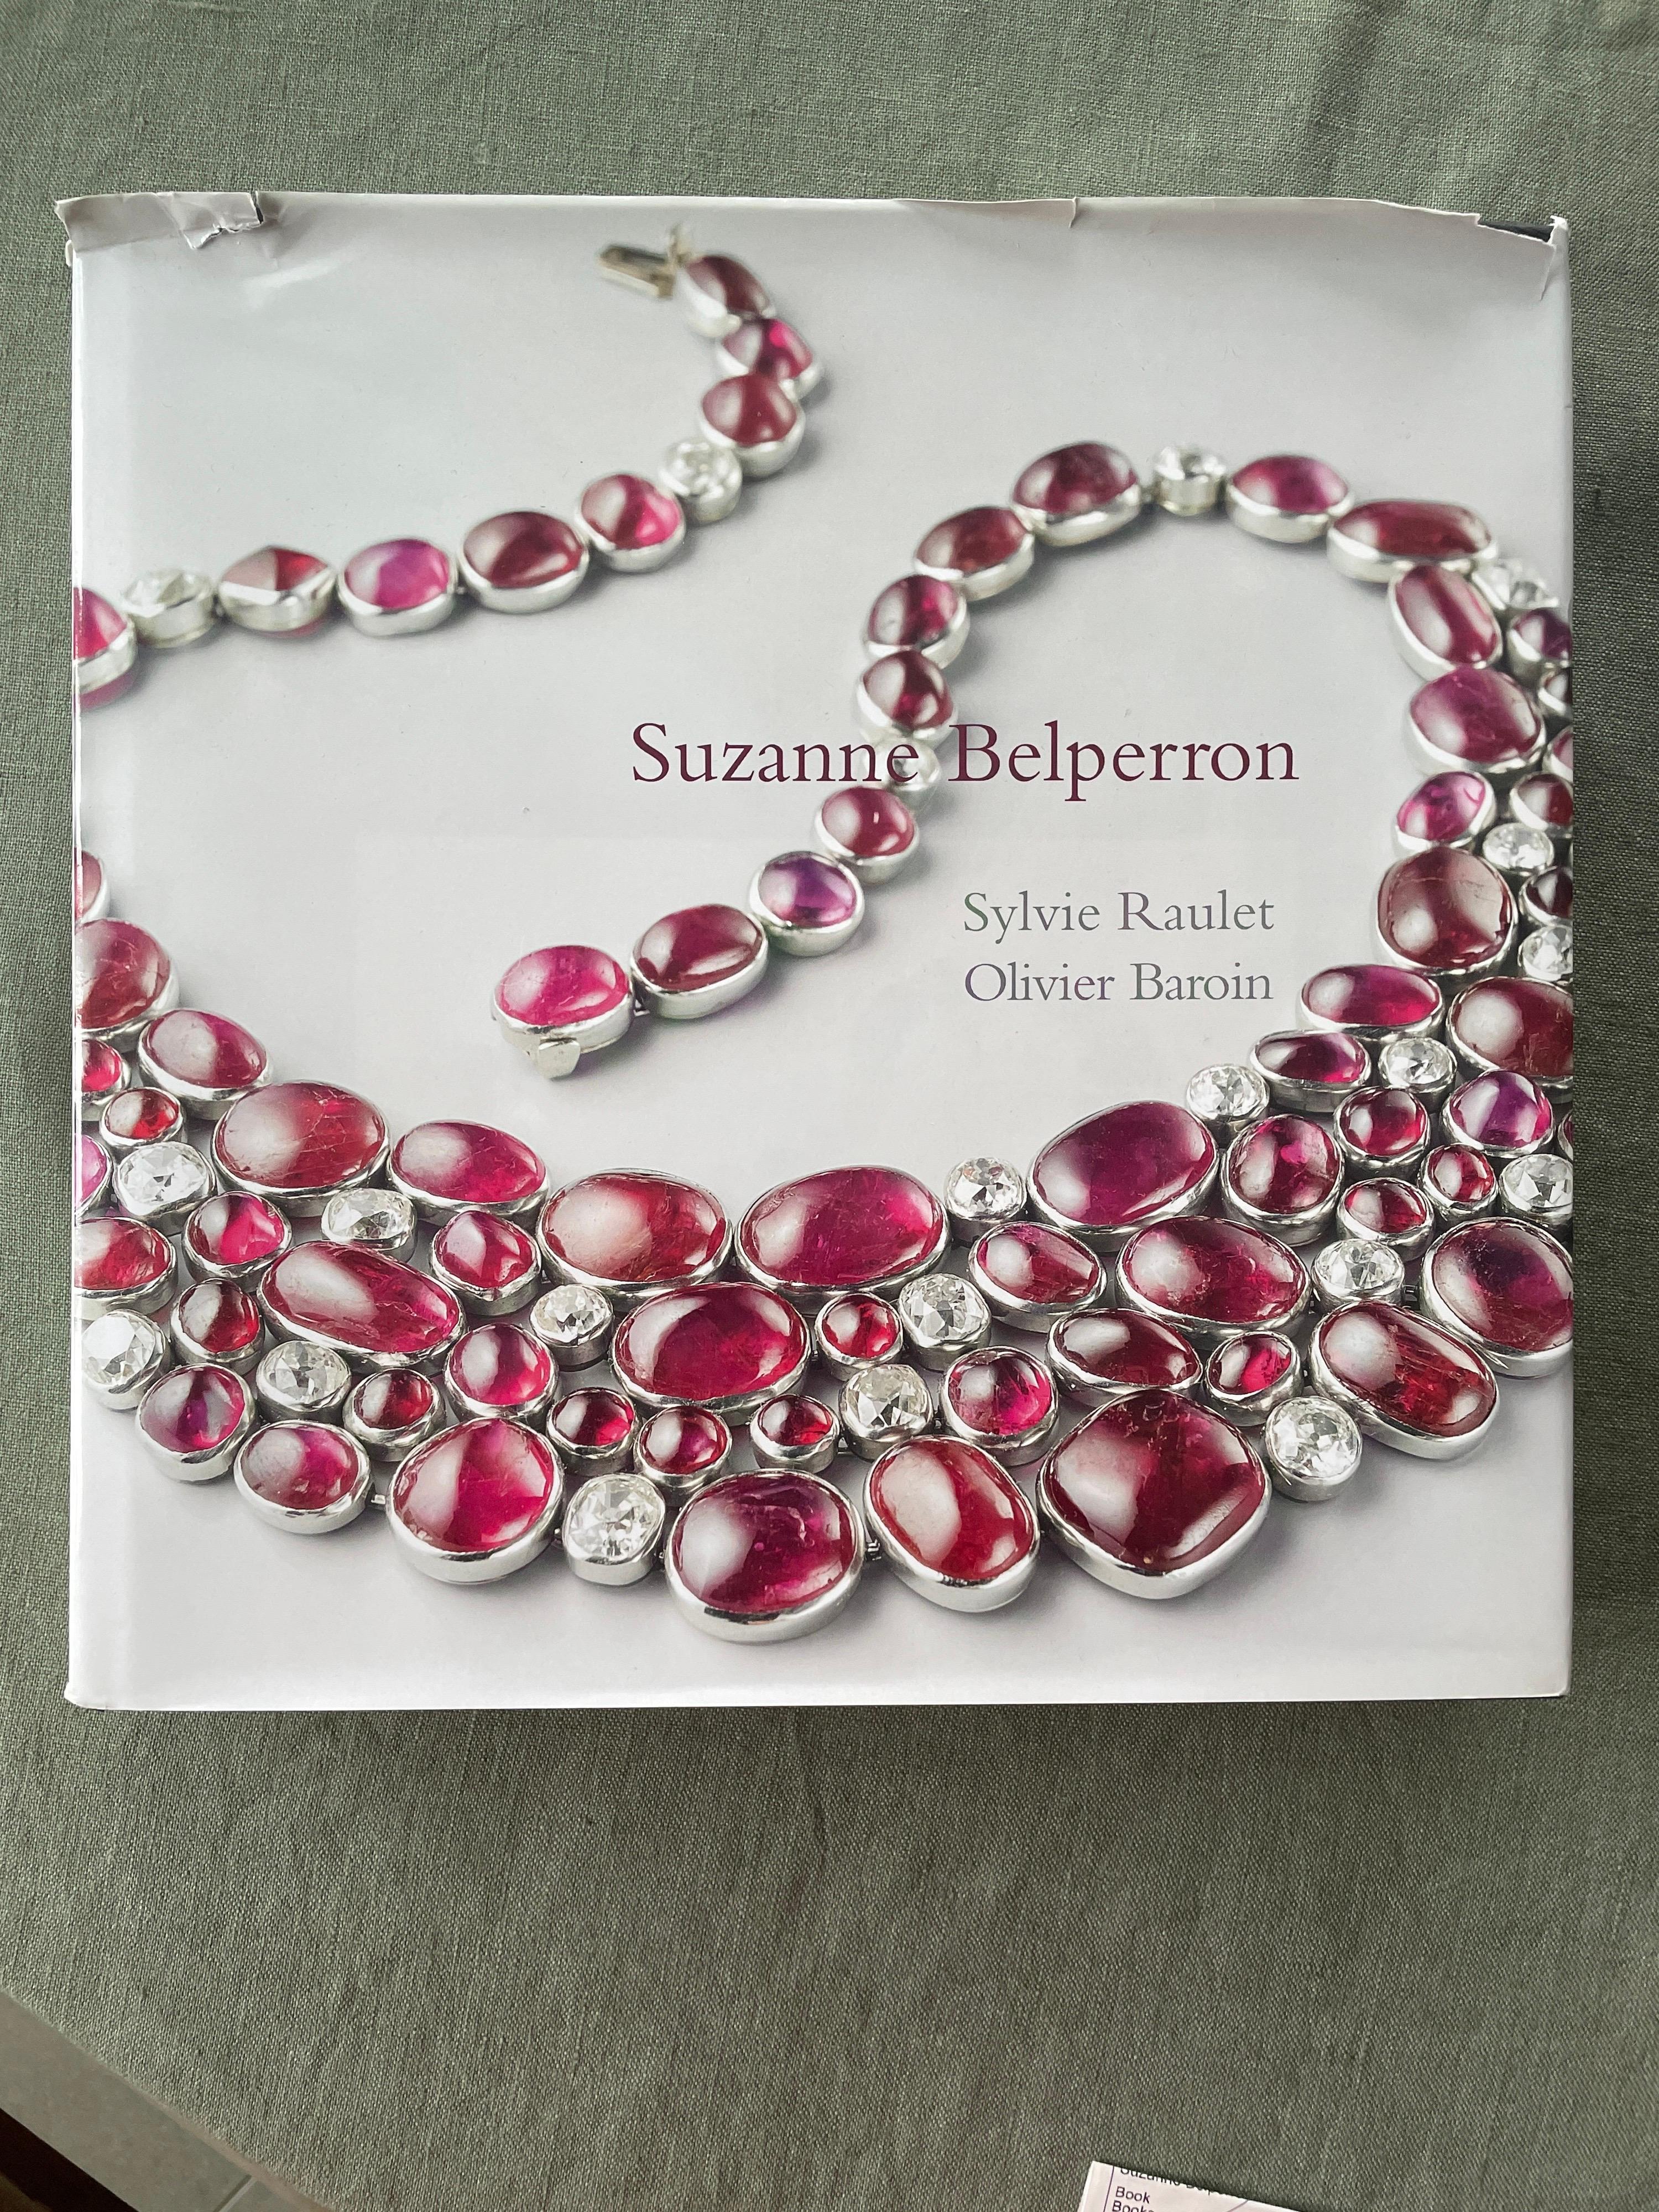 Suzanne Belperron Rare Jewelry Book  6